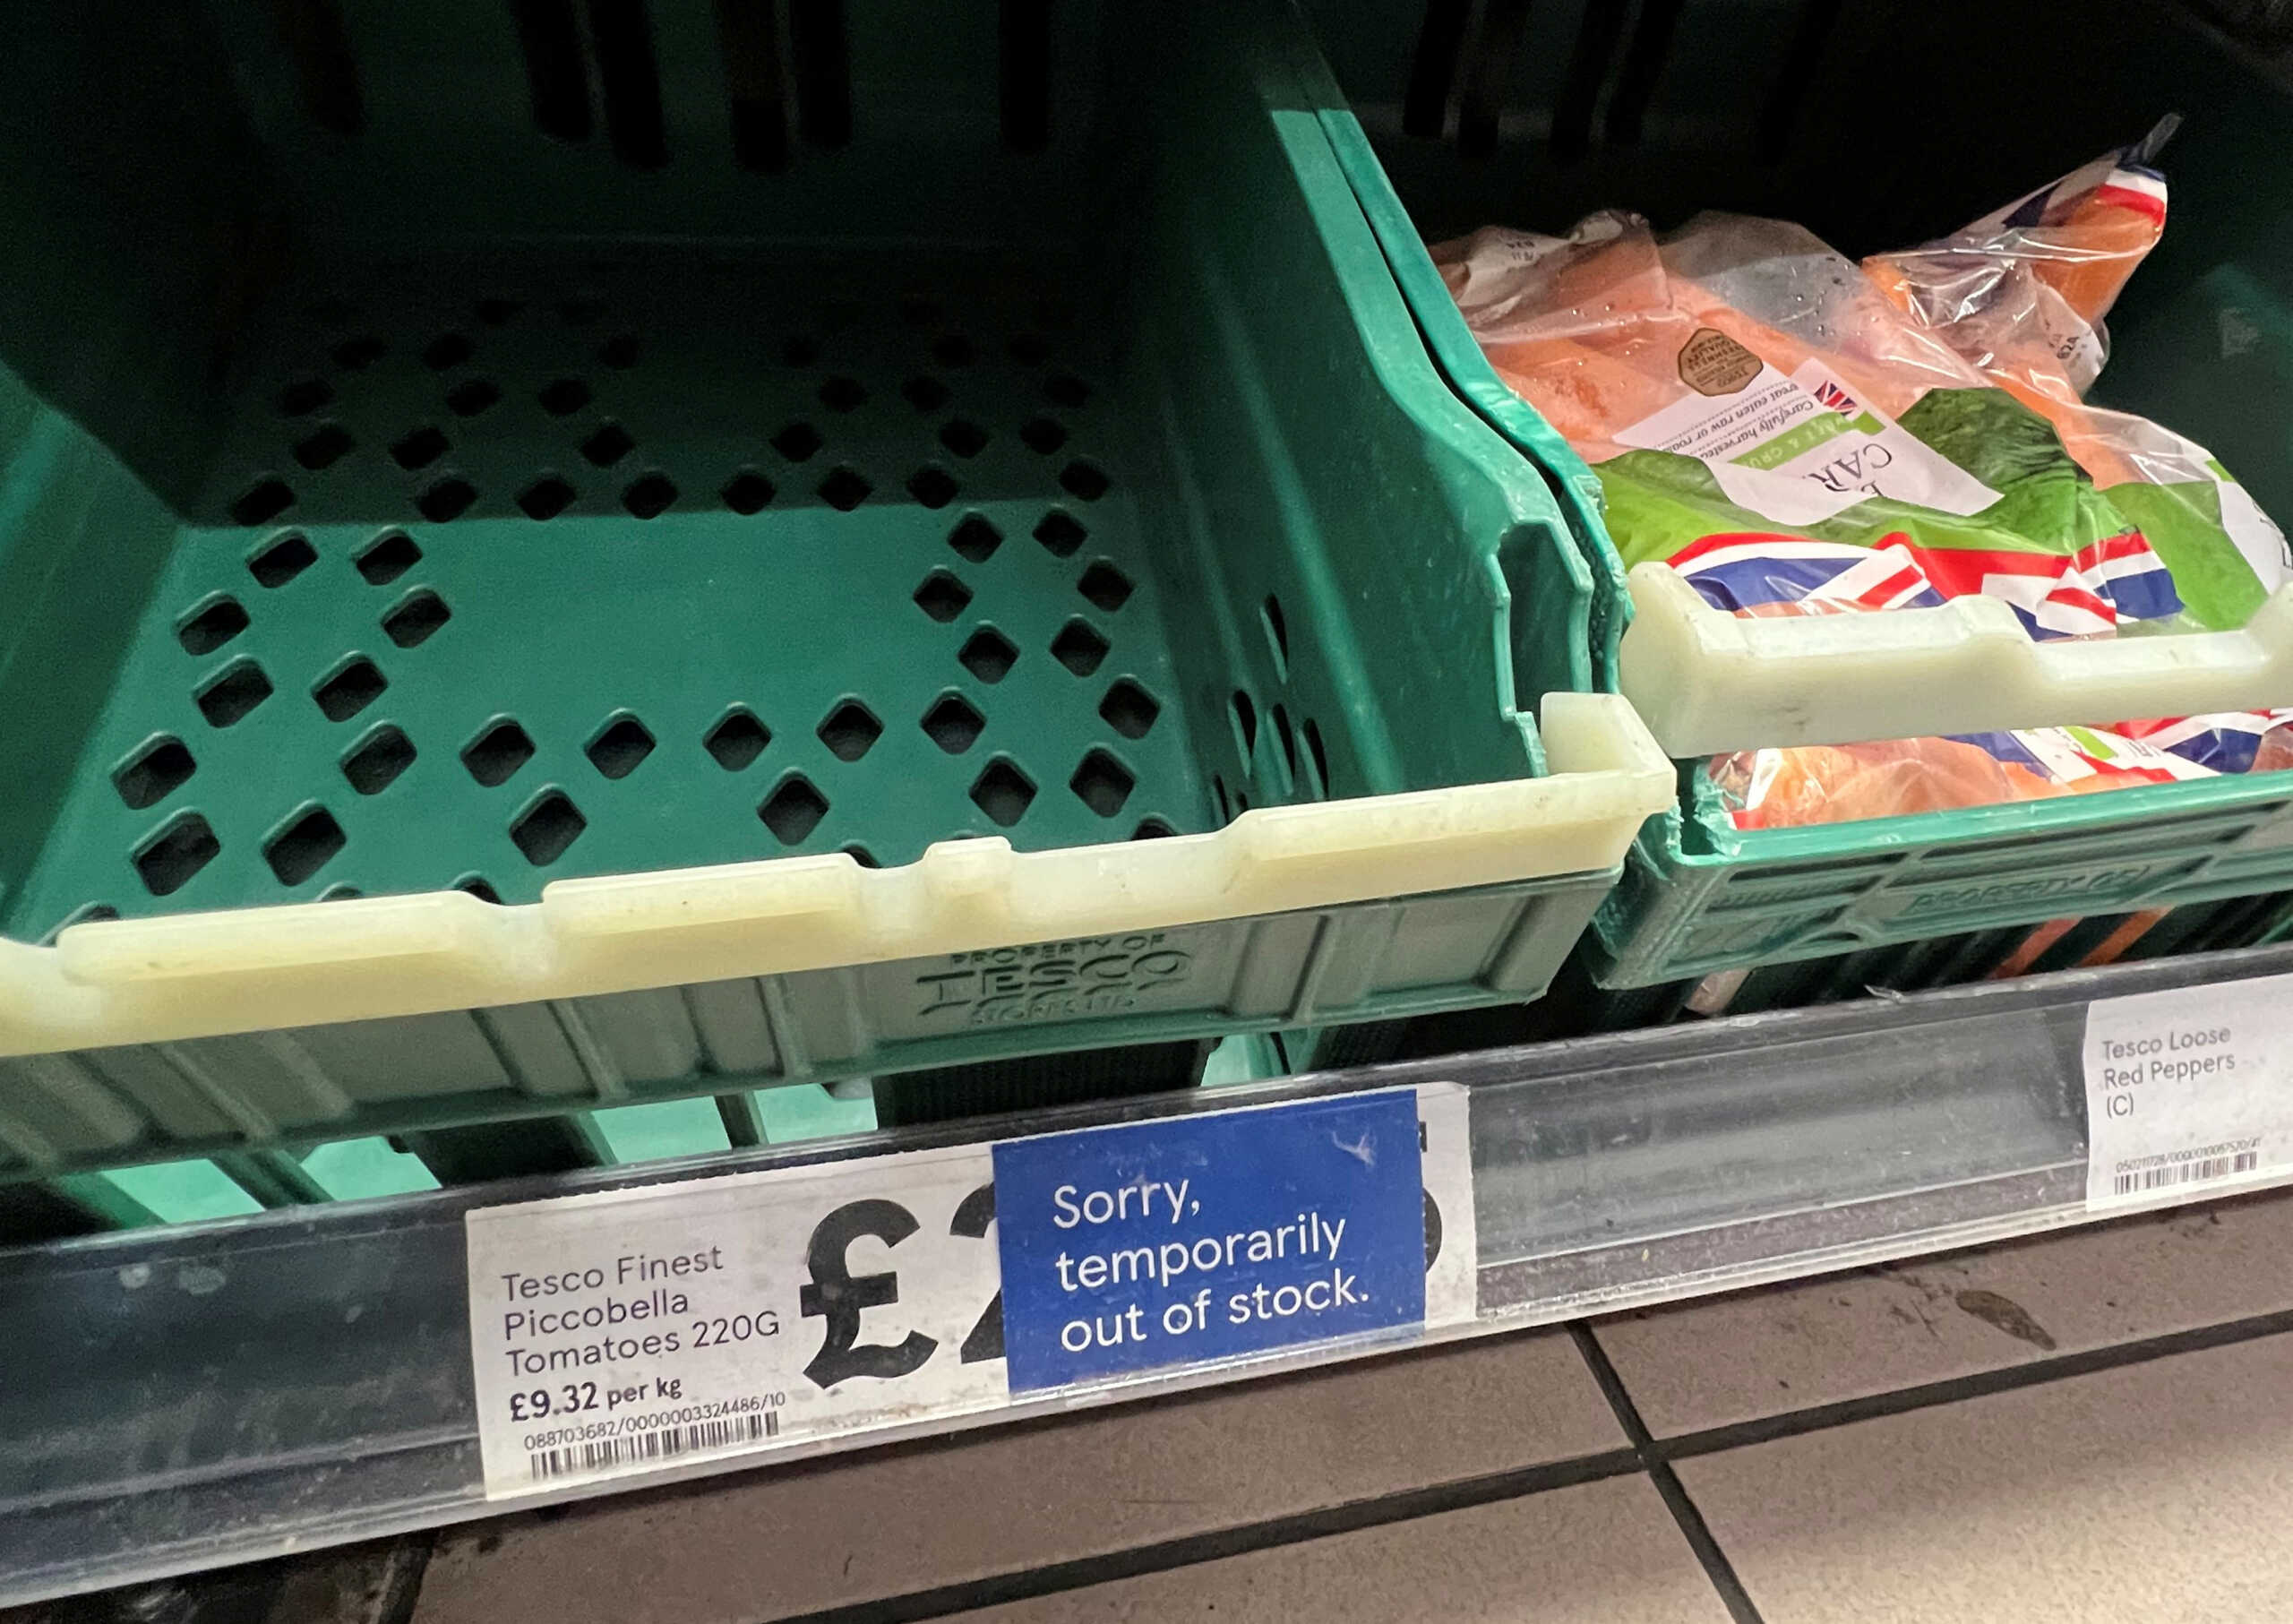 Βρετανία: Με δελτίο οι ντομάτες και άλλα λαχανικά στις μεγάλες αλυσίδες σούπερ μάρκετ